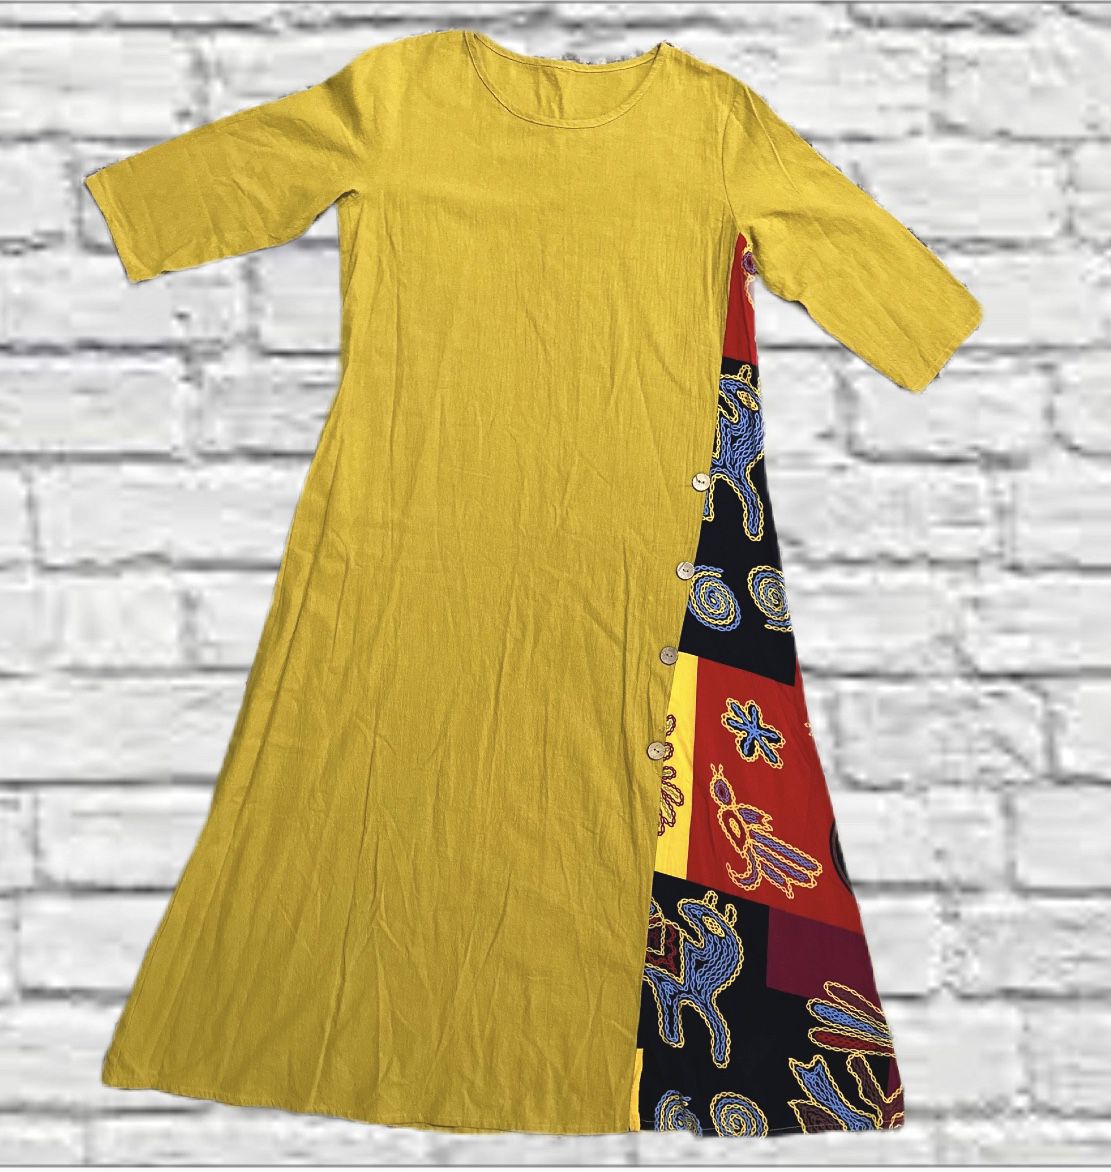 Zanzea Linen Style Maxi Dress Embroidered Mustard Yellow Size Medium Women’s